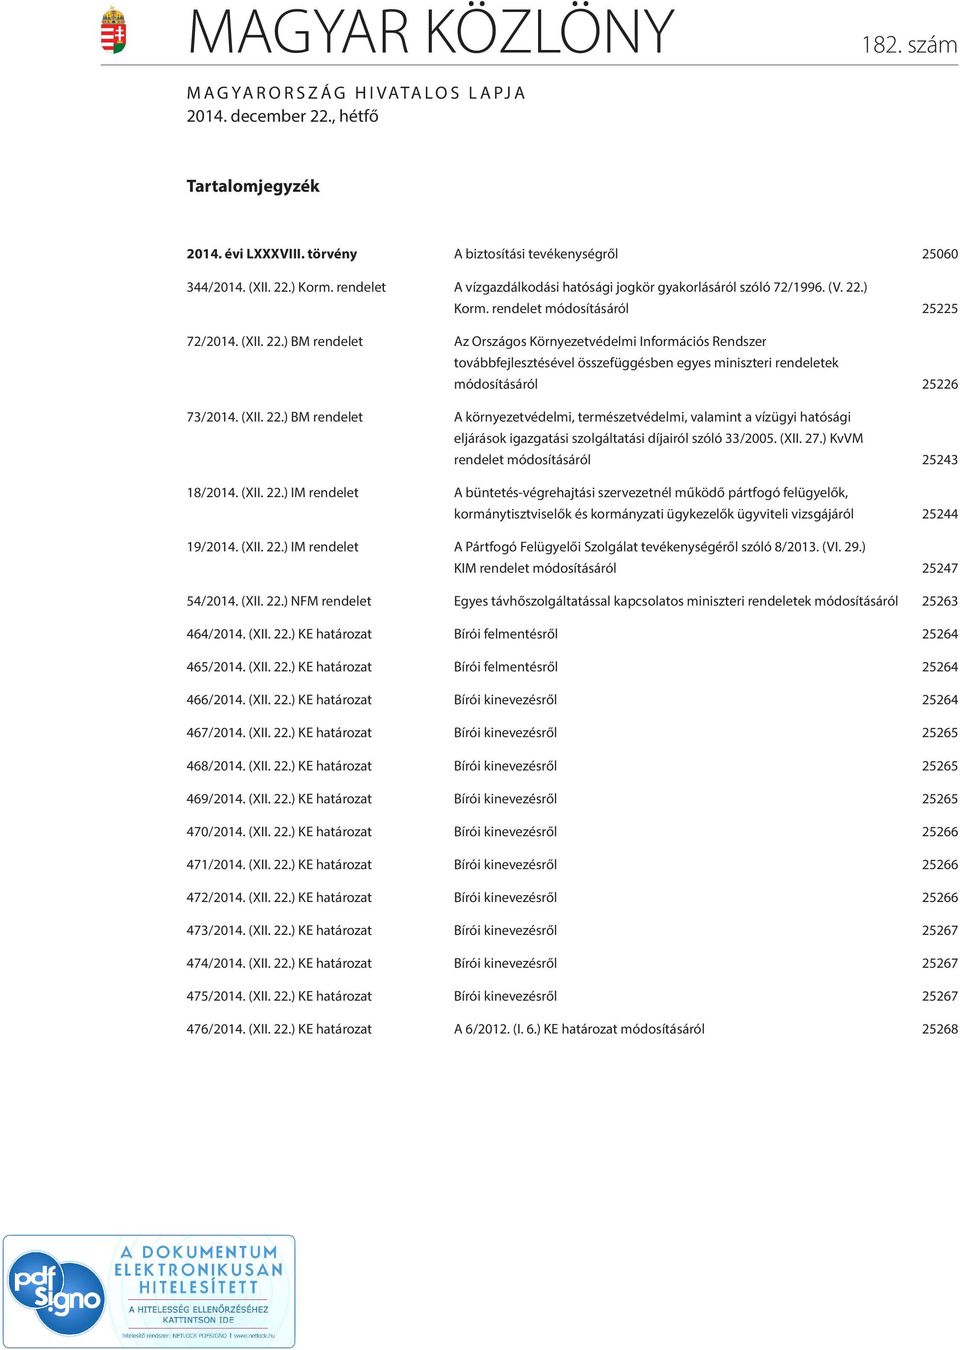 ) Korm. rendelet módosításáról 25225 72/2014. (XII. 22.